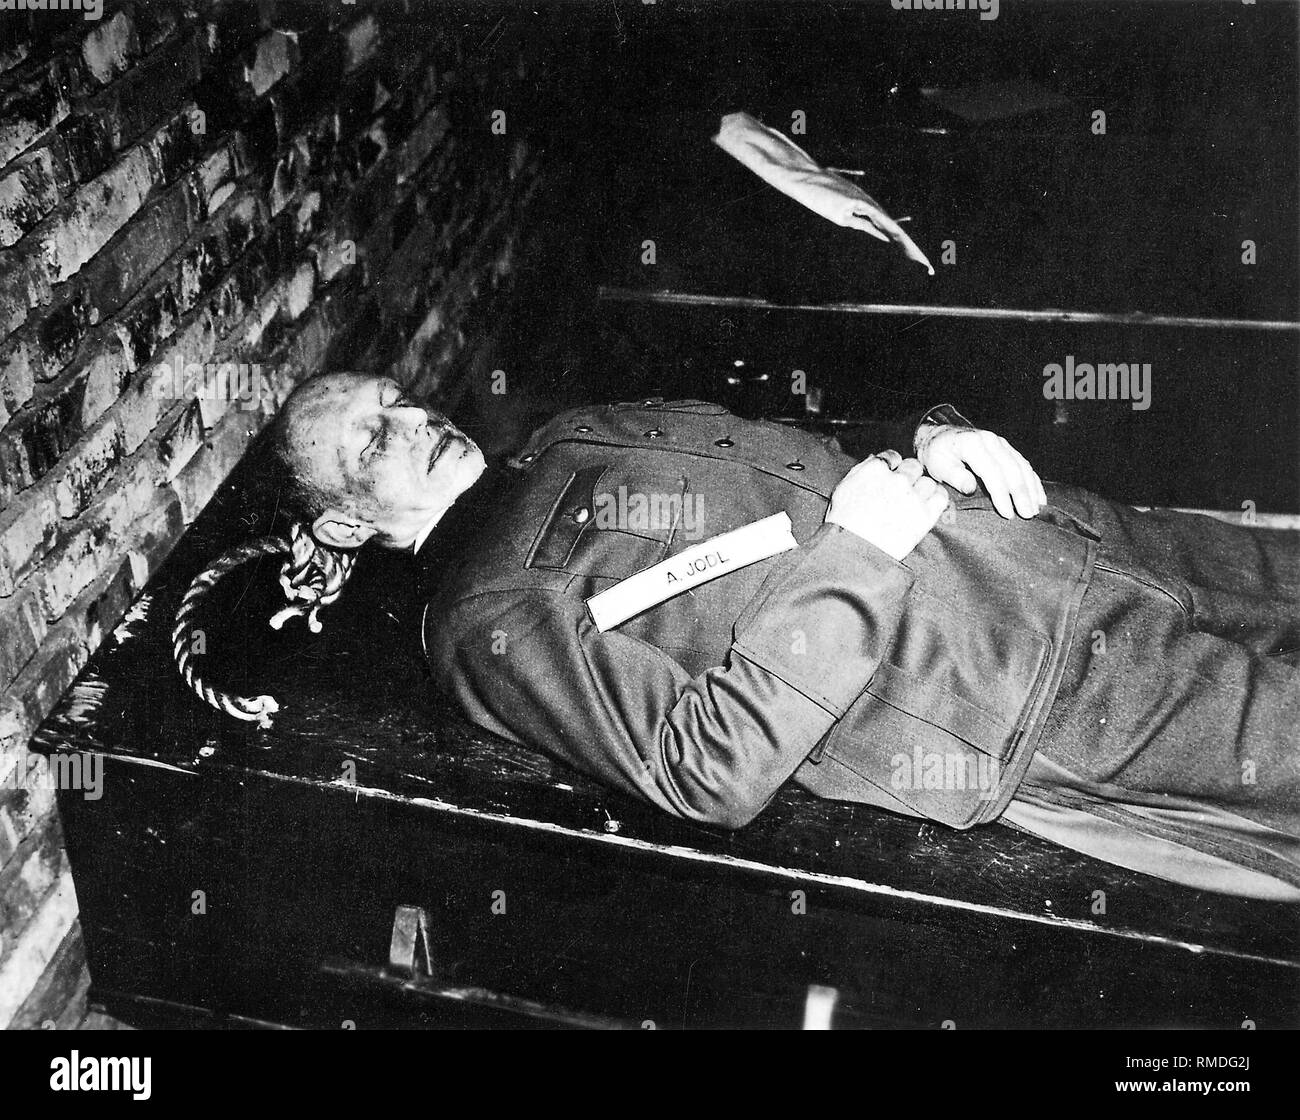 Generaloberst Alfred Jodl dopo la sua esecuzione per impiccagione il 16 ottobre 1946 a Norimberga (processi di Norimberga). Foto Stock